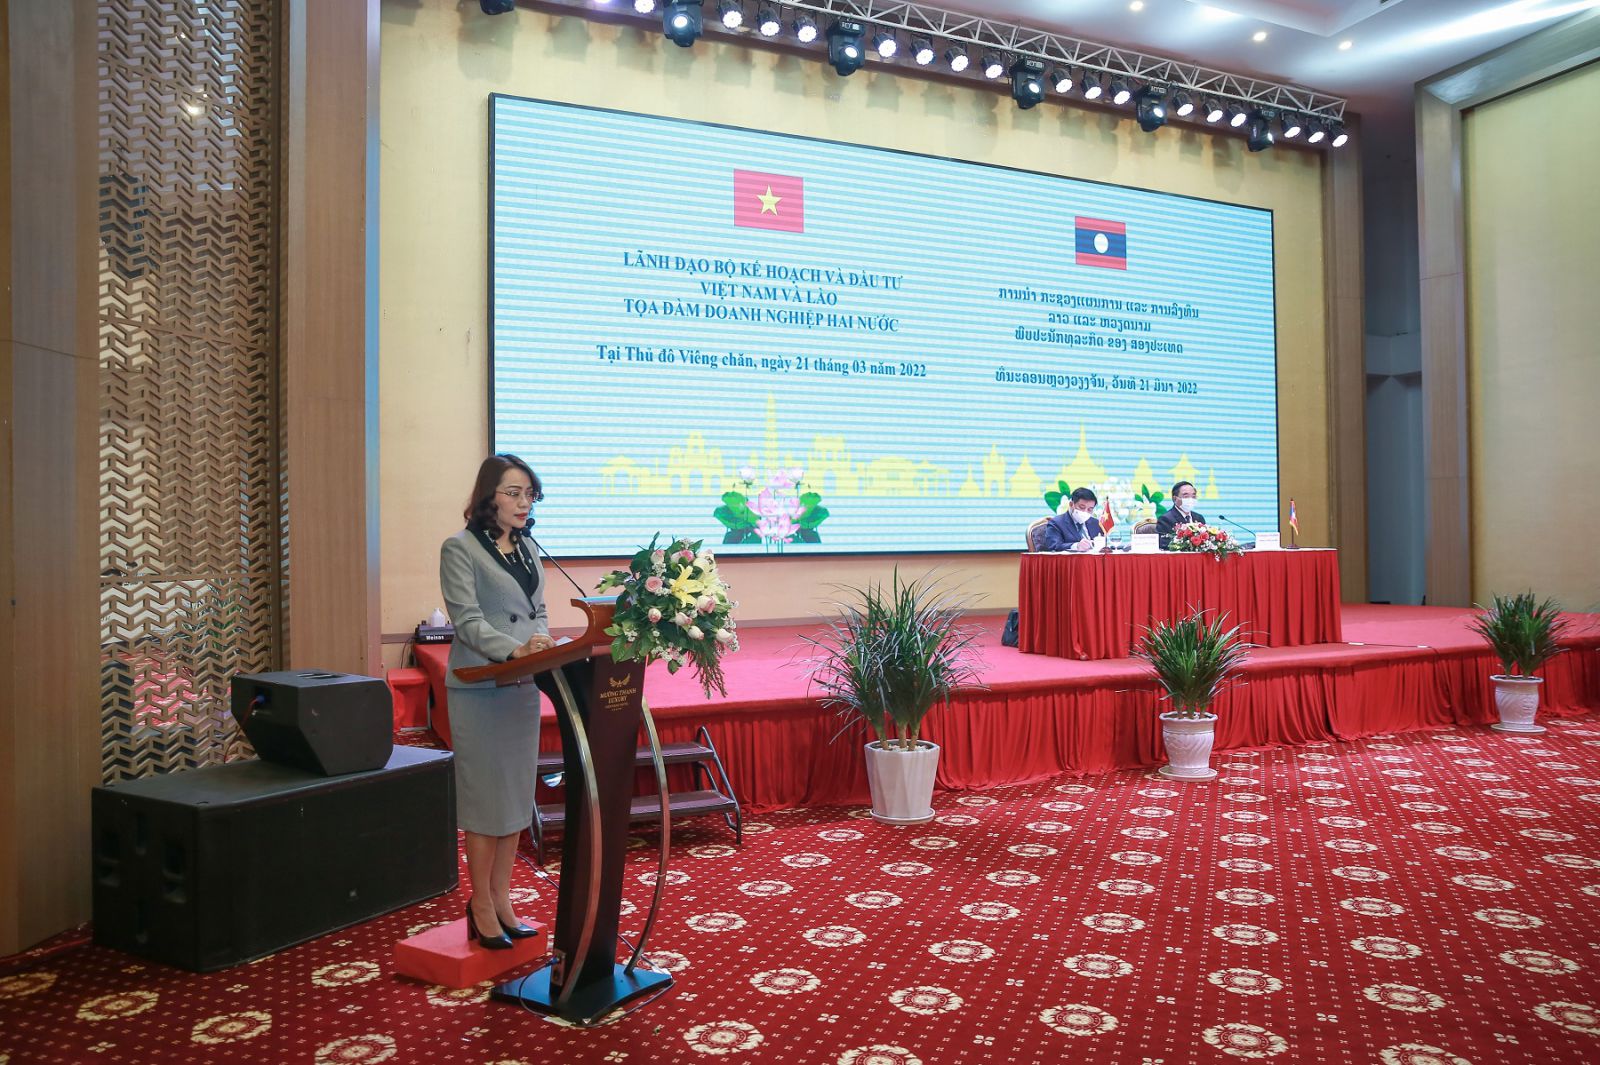 Ảnh 2: Bà Hương Trần Kiều Dung phát biểu tại Tọa đàm Doanh nghiệp Việt Nam - Lào